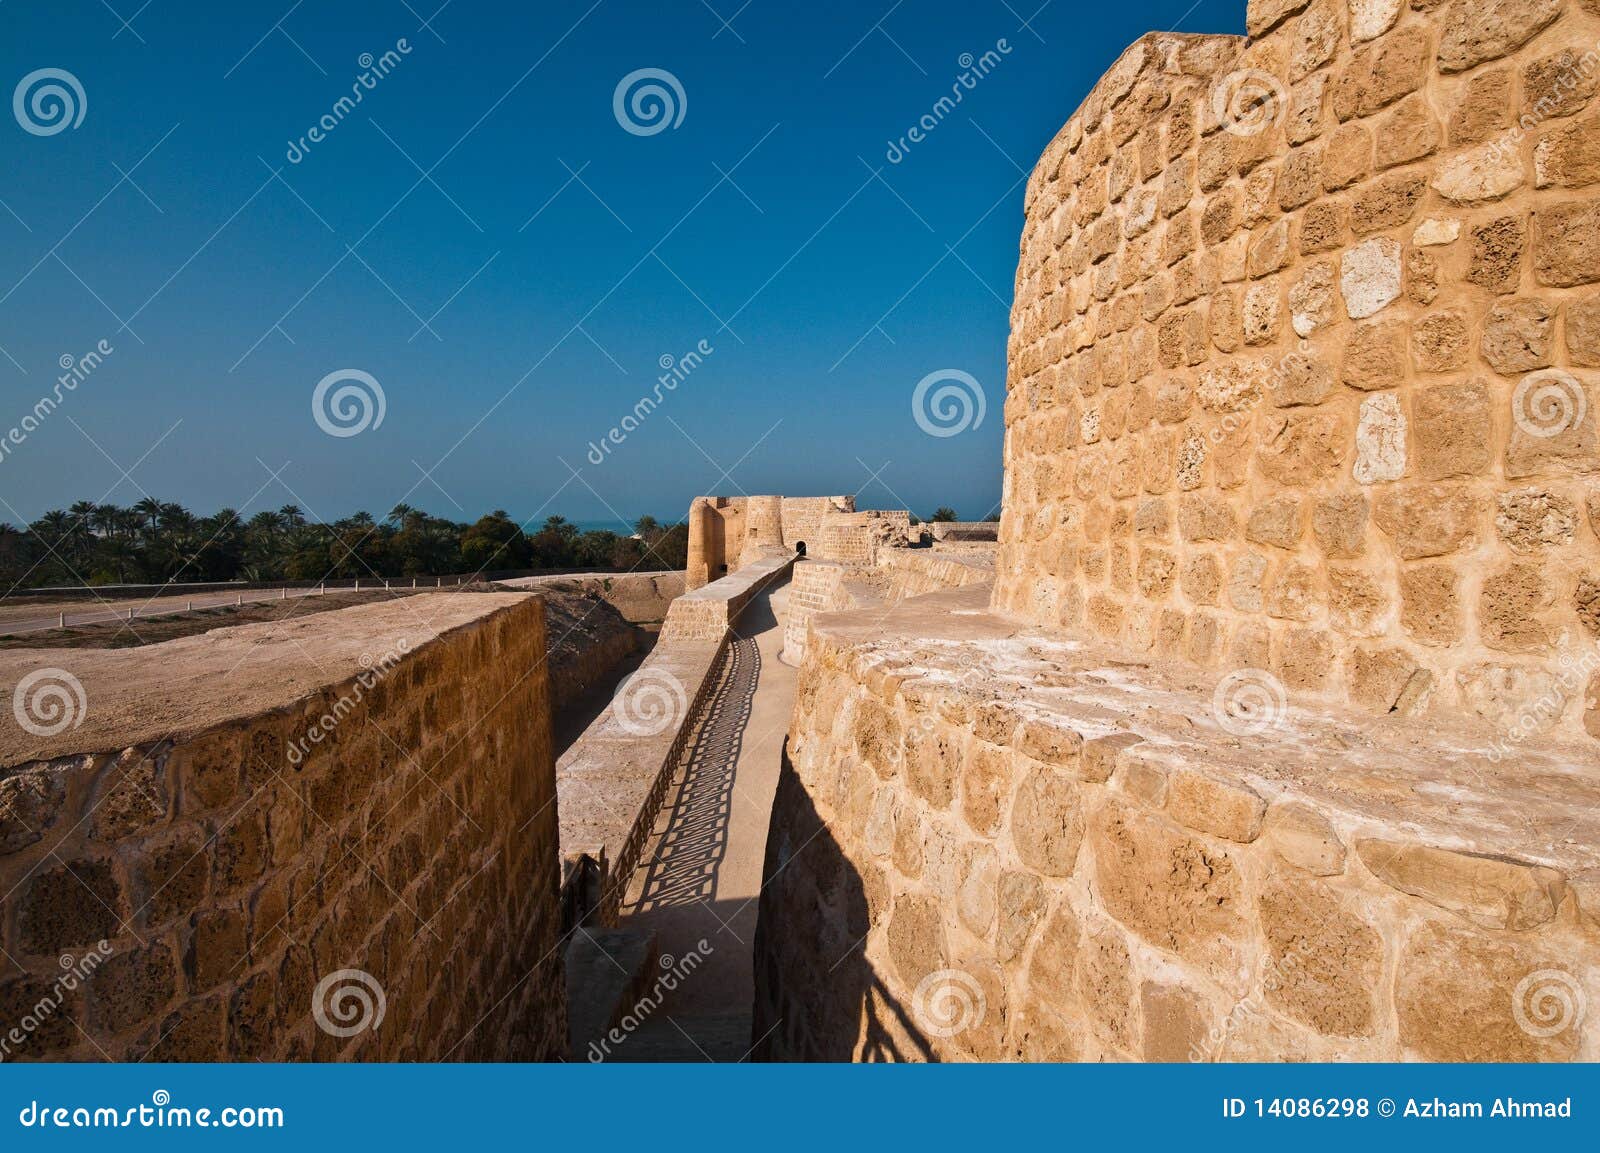 Bahrain-Fort/Qal'at Al Bahrain. Bahrain-Fort oder alias Qal'at Al-Bahrain ist eine archäologische Fundstätte und es war einmal das Kapital der Dilmun Zivilisation sowie darstellt Bahrains Identität als Mitte des Handels und des kulturellen Austausches. Die Site wird durch ein islamisches Fort beherrscht, das hinsichtlich des 16. Jahrhunderts A.D. zurückgeht. Sie ist jetzt unter einer berühmten Touristenattraktion in Bahrain.